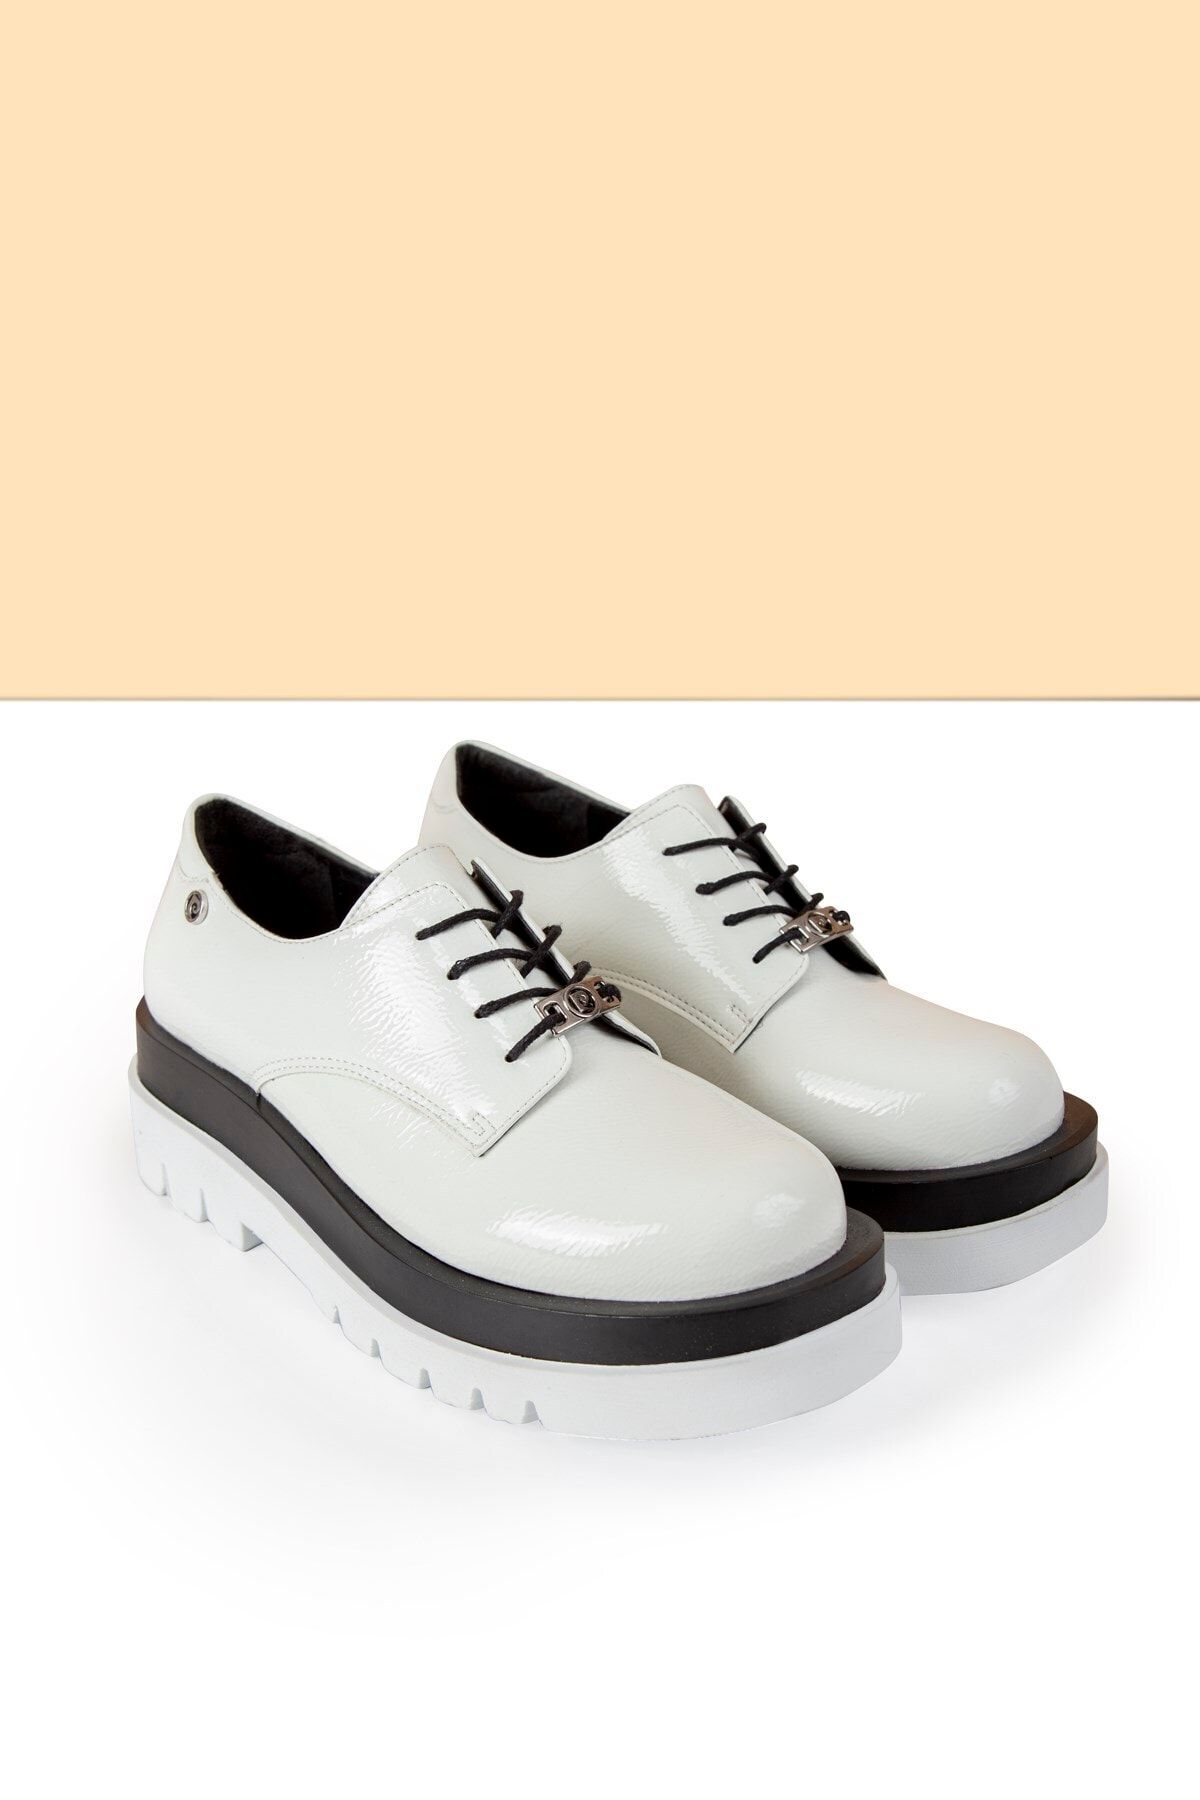 Pierre Cardin Pc-50827 Rugan Beyaz Kadın Ayakkabı